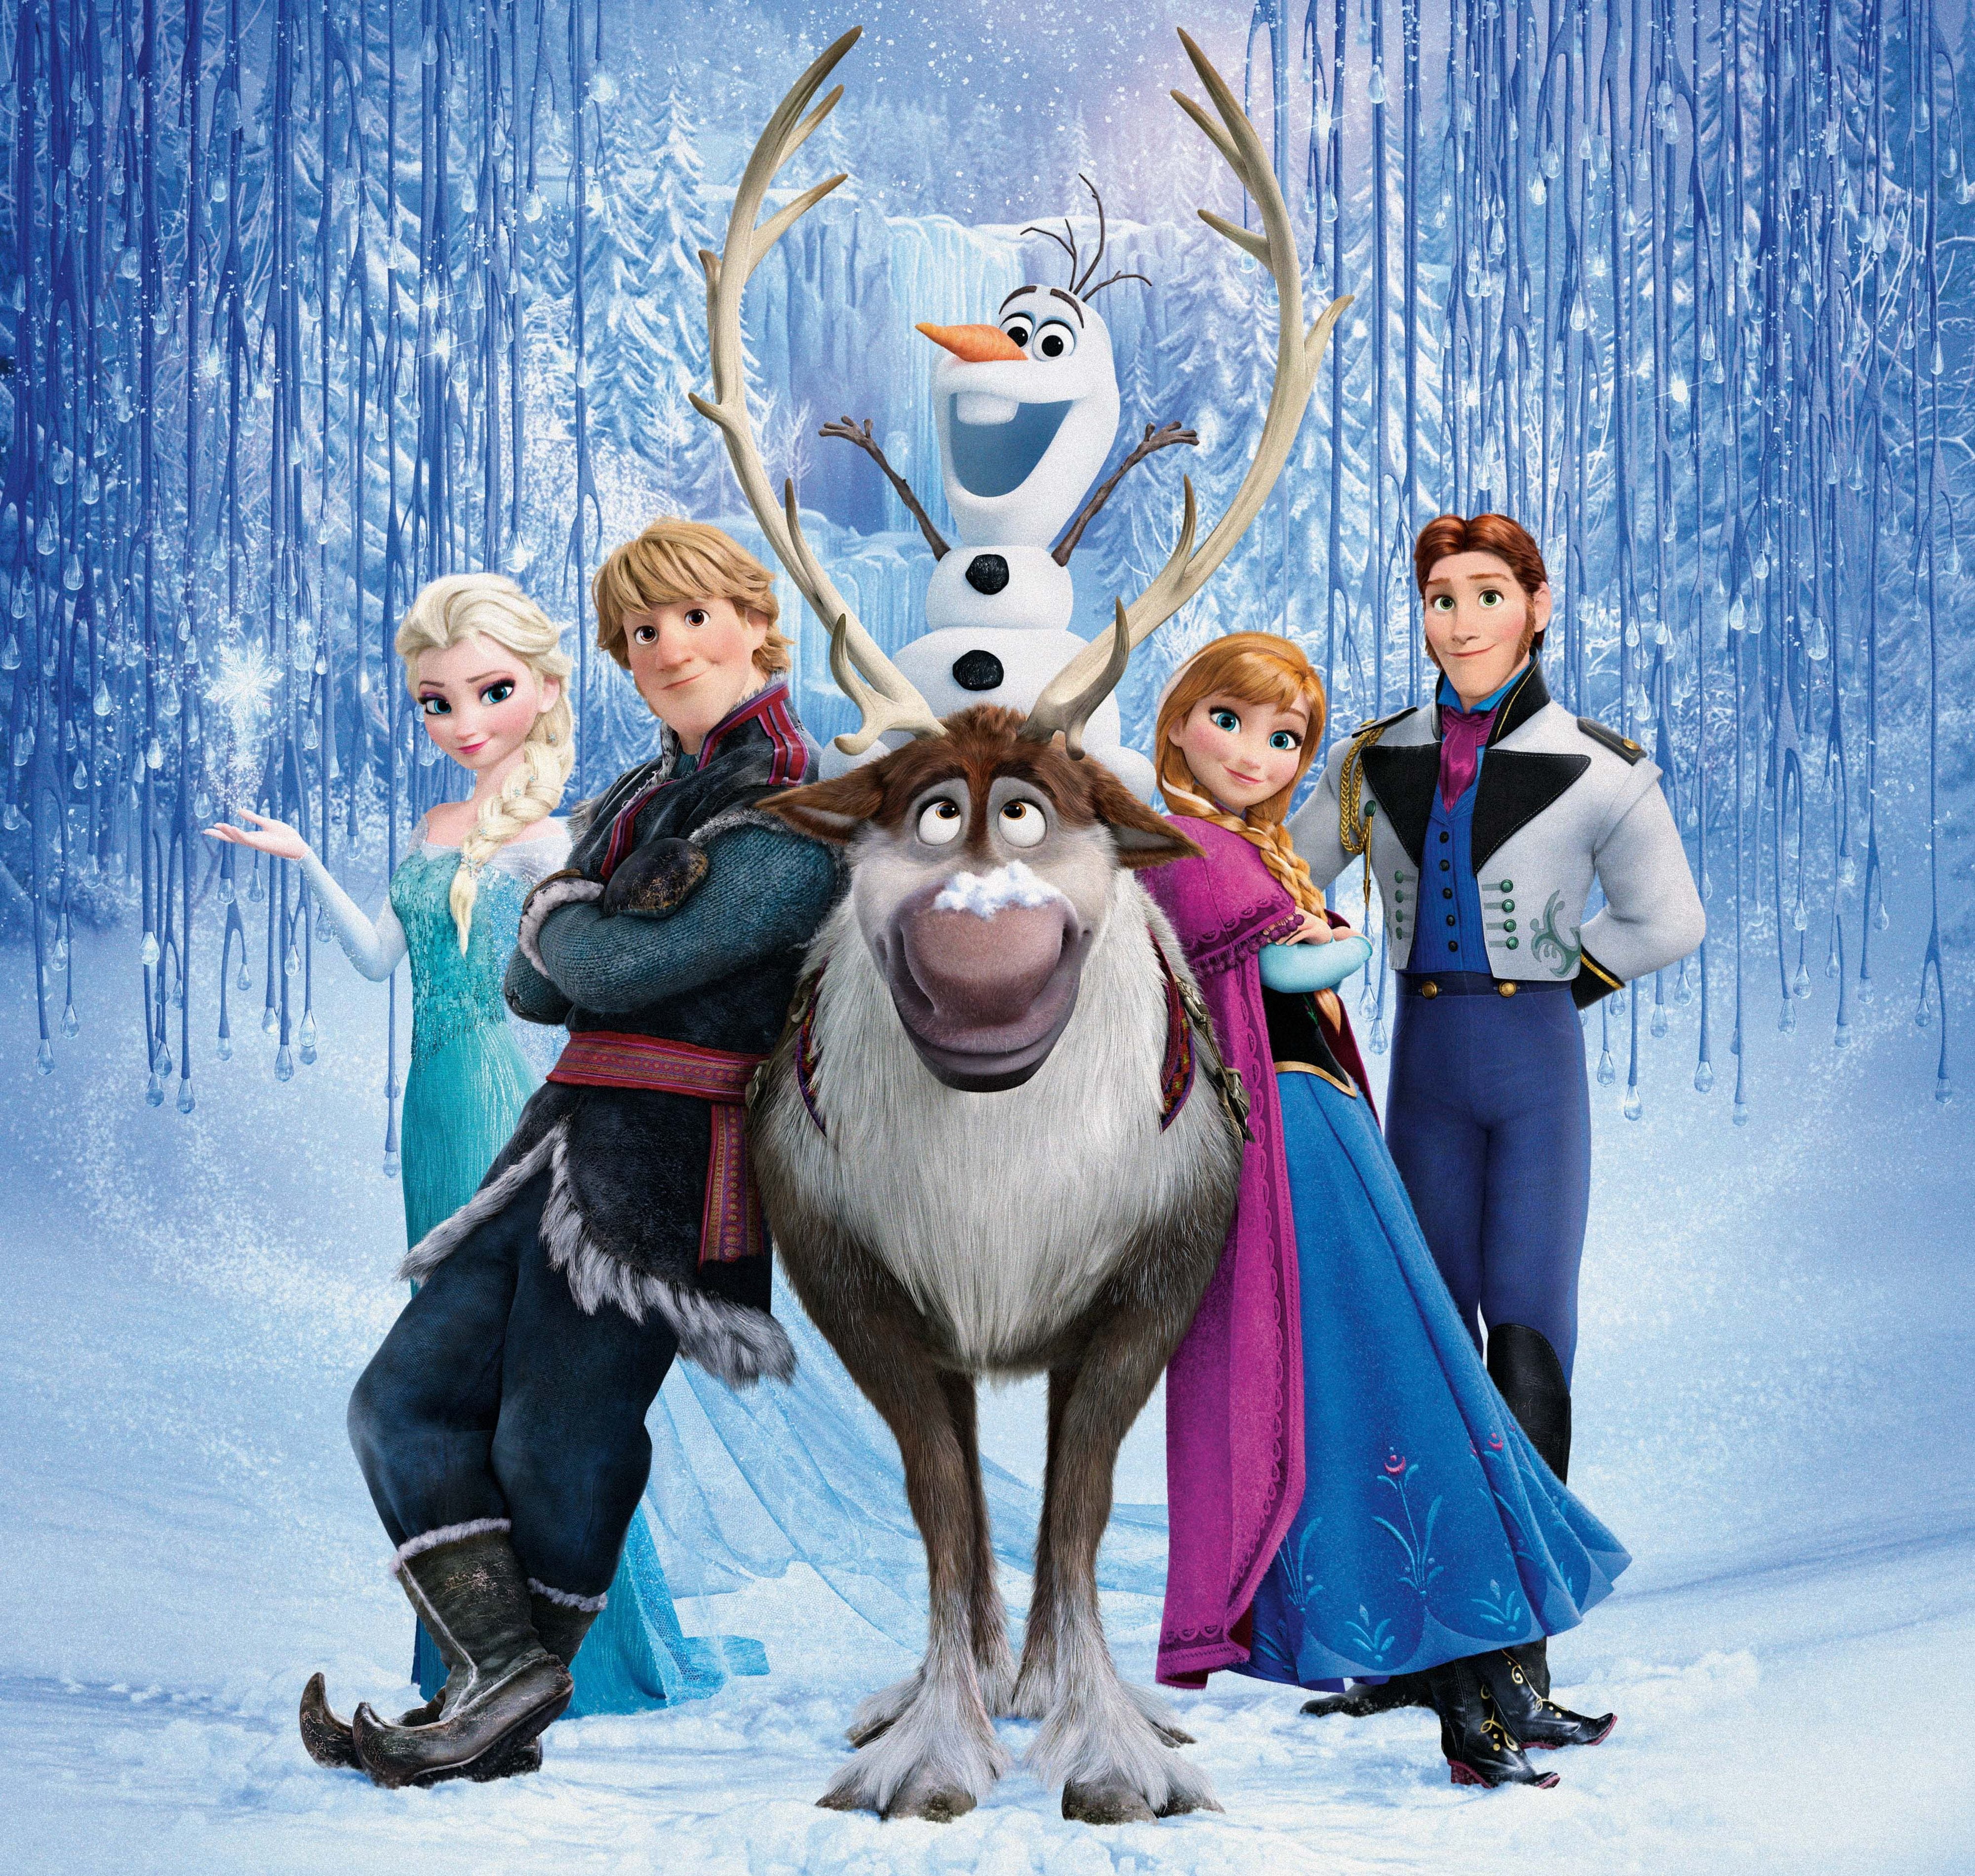 Disney Frozen wallpaper, snow, snowflakes, ice, deer, snowman